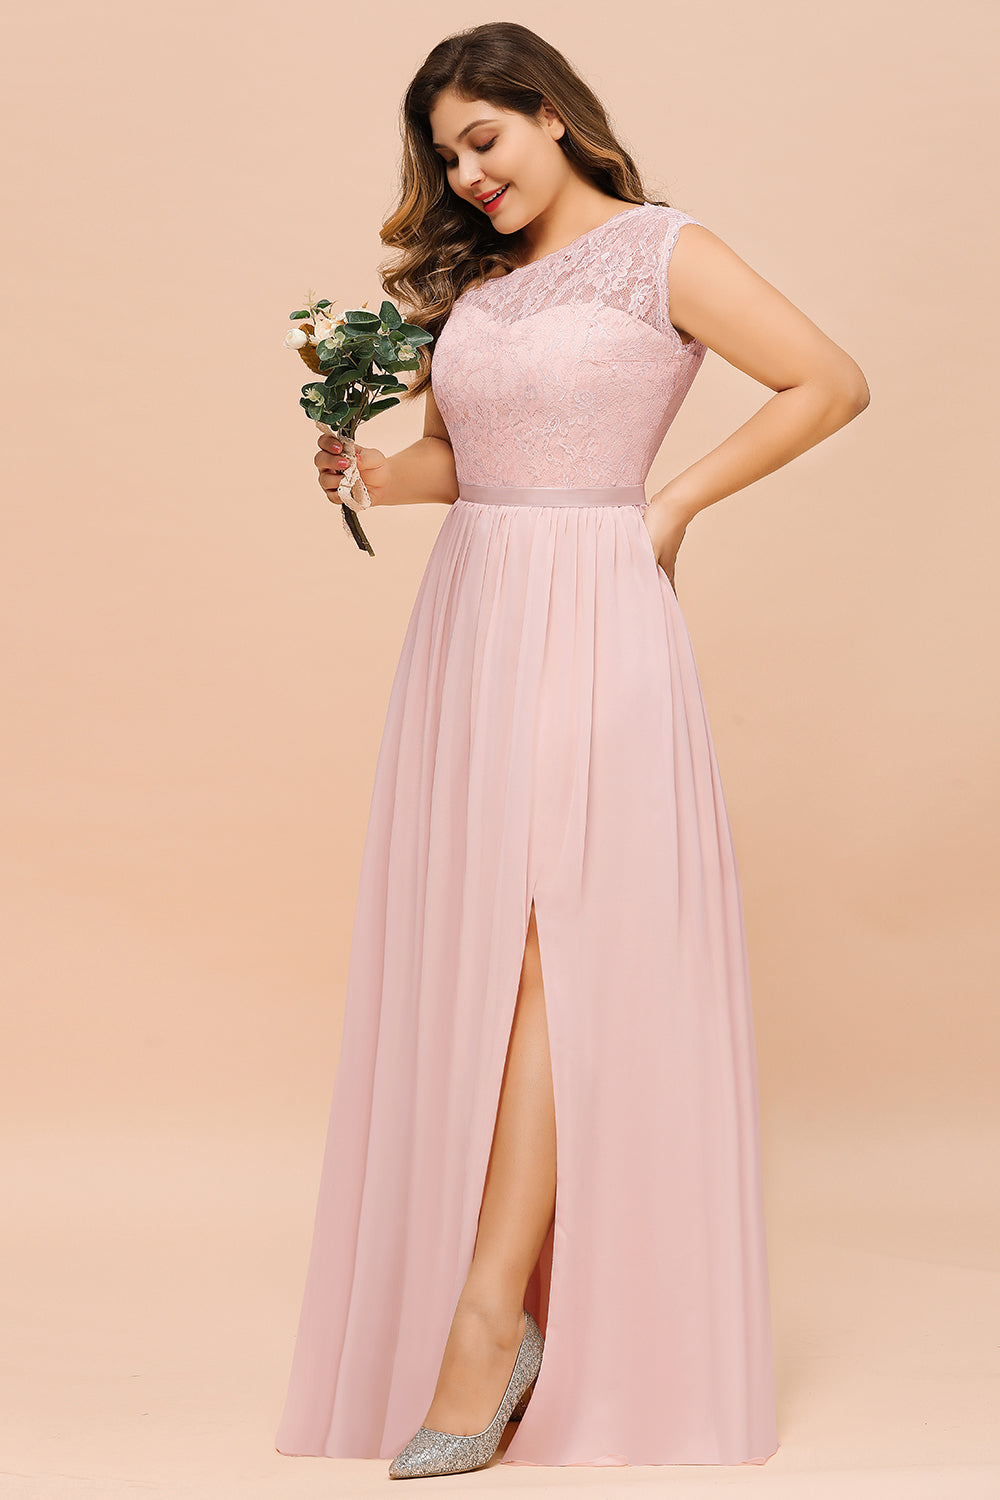 Suchen Sie Elegante Brautjungfernkleider Lang Rosa online bei babyonlinedress.de. Brautjungfernkleid mit Spitze für Sie zur Hochzeit gehen.